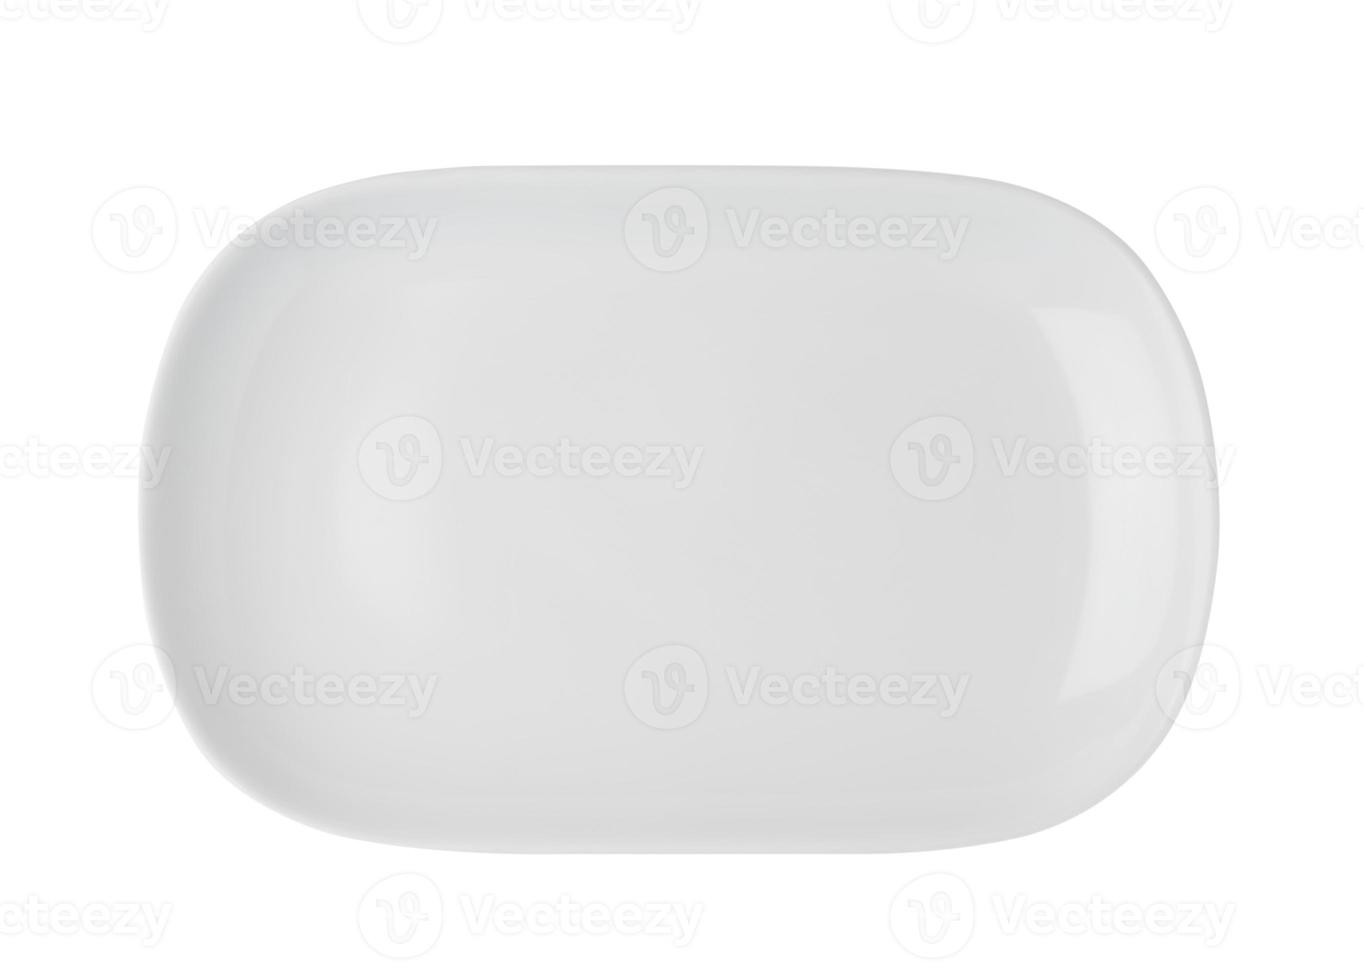 vit platta isolerad på vit bakgrund foto